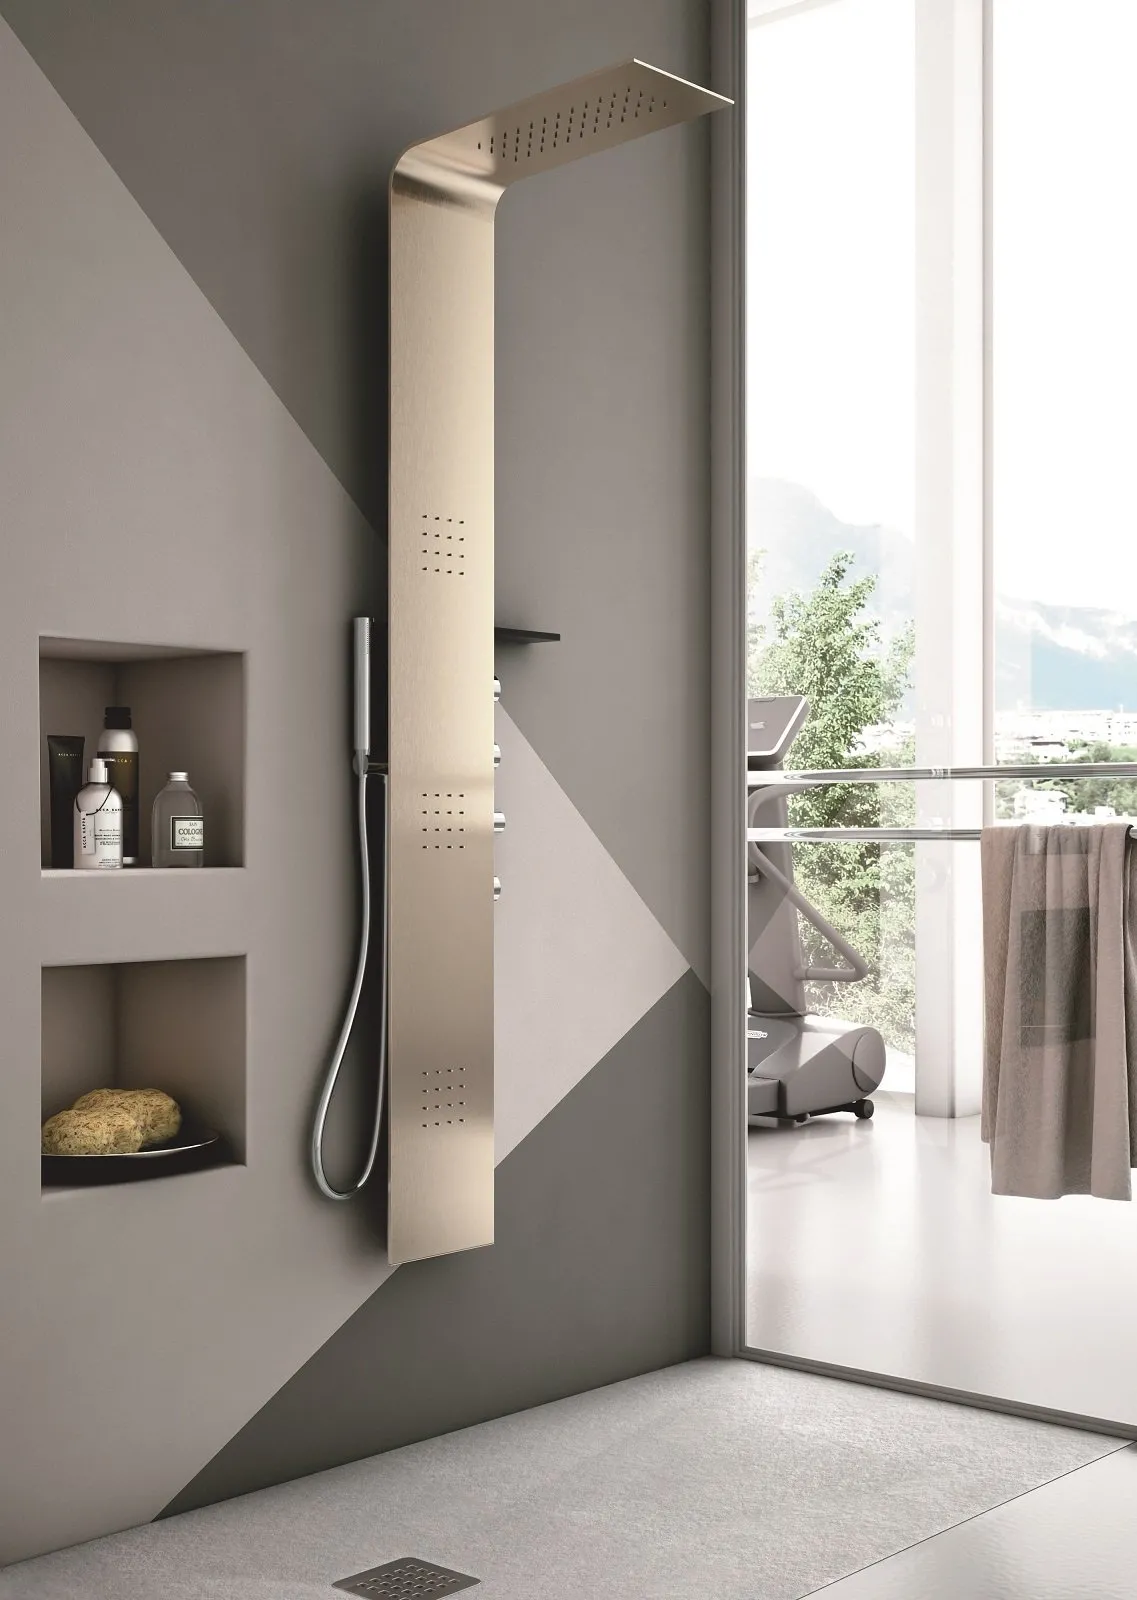 Colonna doccia: relax domestico in poco spazio - Cose di Casa